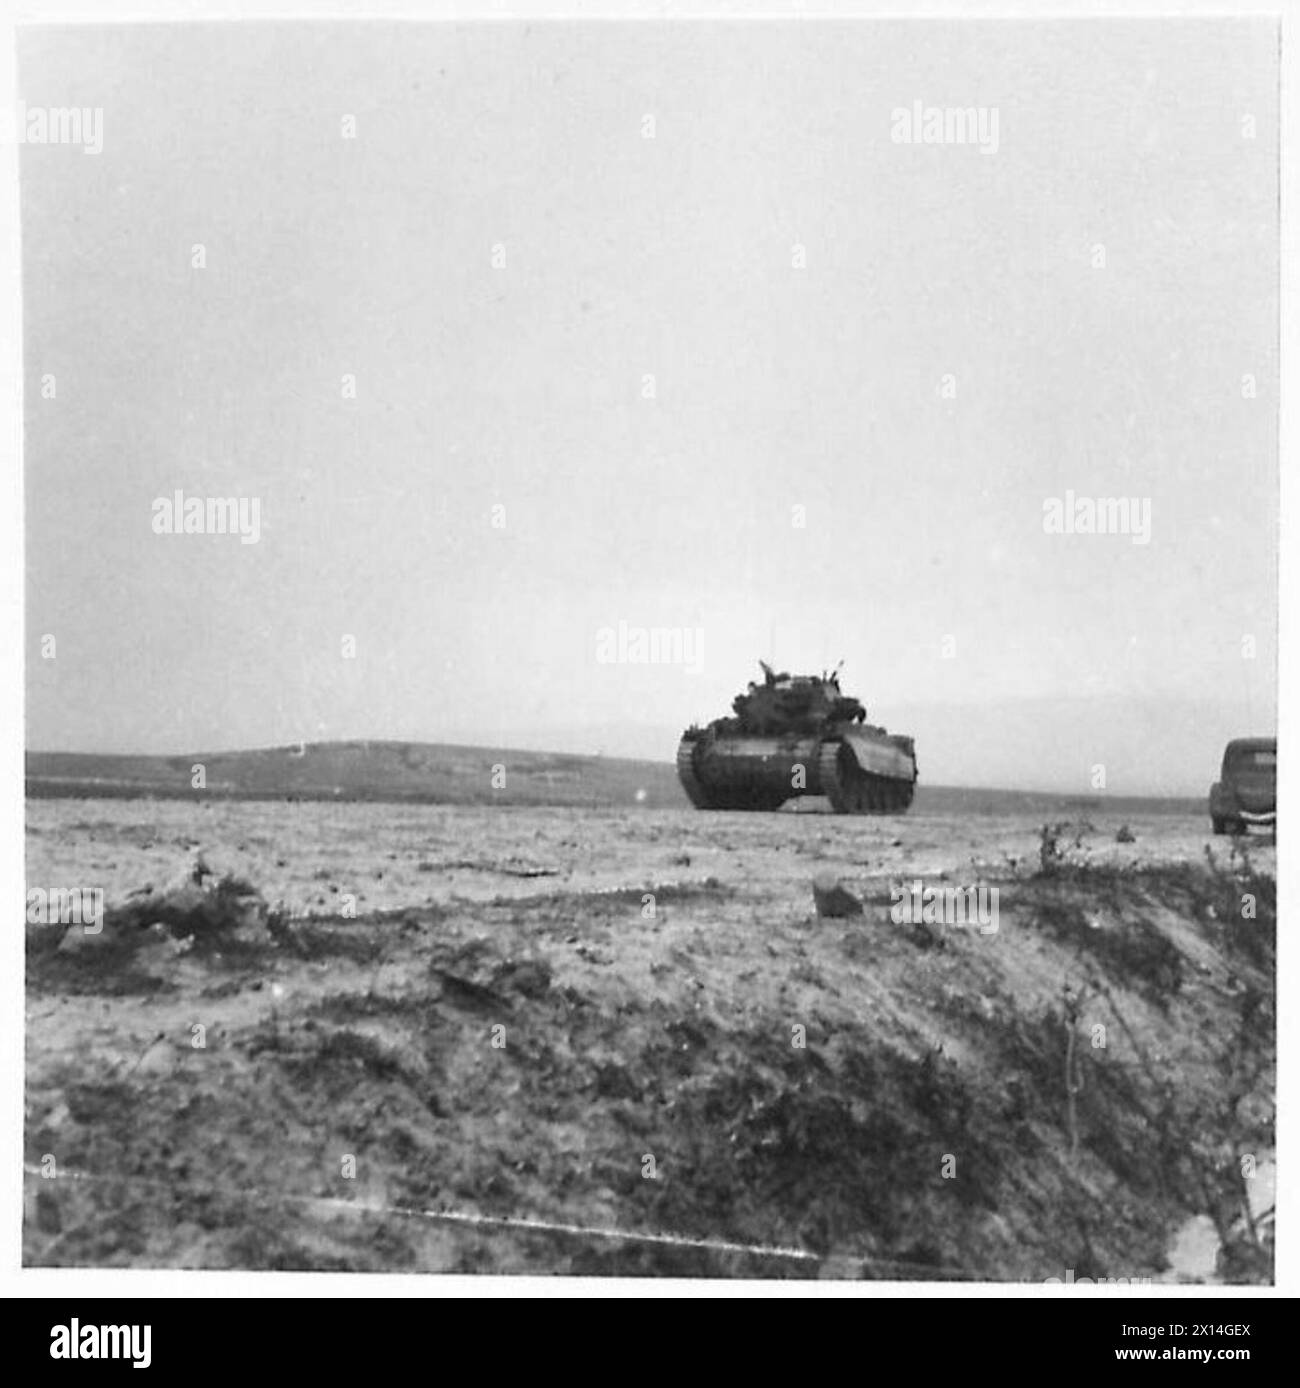 L'ESERCITO BRITANNICO NELLA CAMPAGNA DI TUNISIA, NOVEMBRE 1942-MAGGIO 1943 - UN CROCIATO MK. III carro armato del 17th/21st Lancers (26th Armoured Brigade, 6th Armoured Division) sulla strada Bou Arada durante l'attacco alla collina "Two Tree". La battaglia di Bou Arada. Un posto di osservazione in avanti detenuto dai tedeschi era conosciuto come "Two Tree" Hill poiché sul suo punto più alto crescevano due alberi. Era importante prendere la collina in quanto aveva una posizione vantaggiosa comandando tutti gli avvicinamenti per molte miglia intorno. La sera del 10 gennaio una pattuglia di carri tedeschi, di circa quindici uomini, si avvicinò e raggiunse la periferia Foto Stock